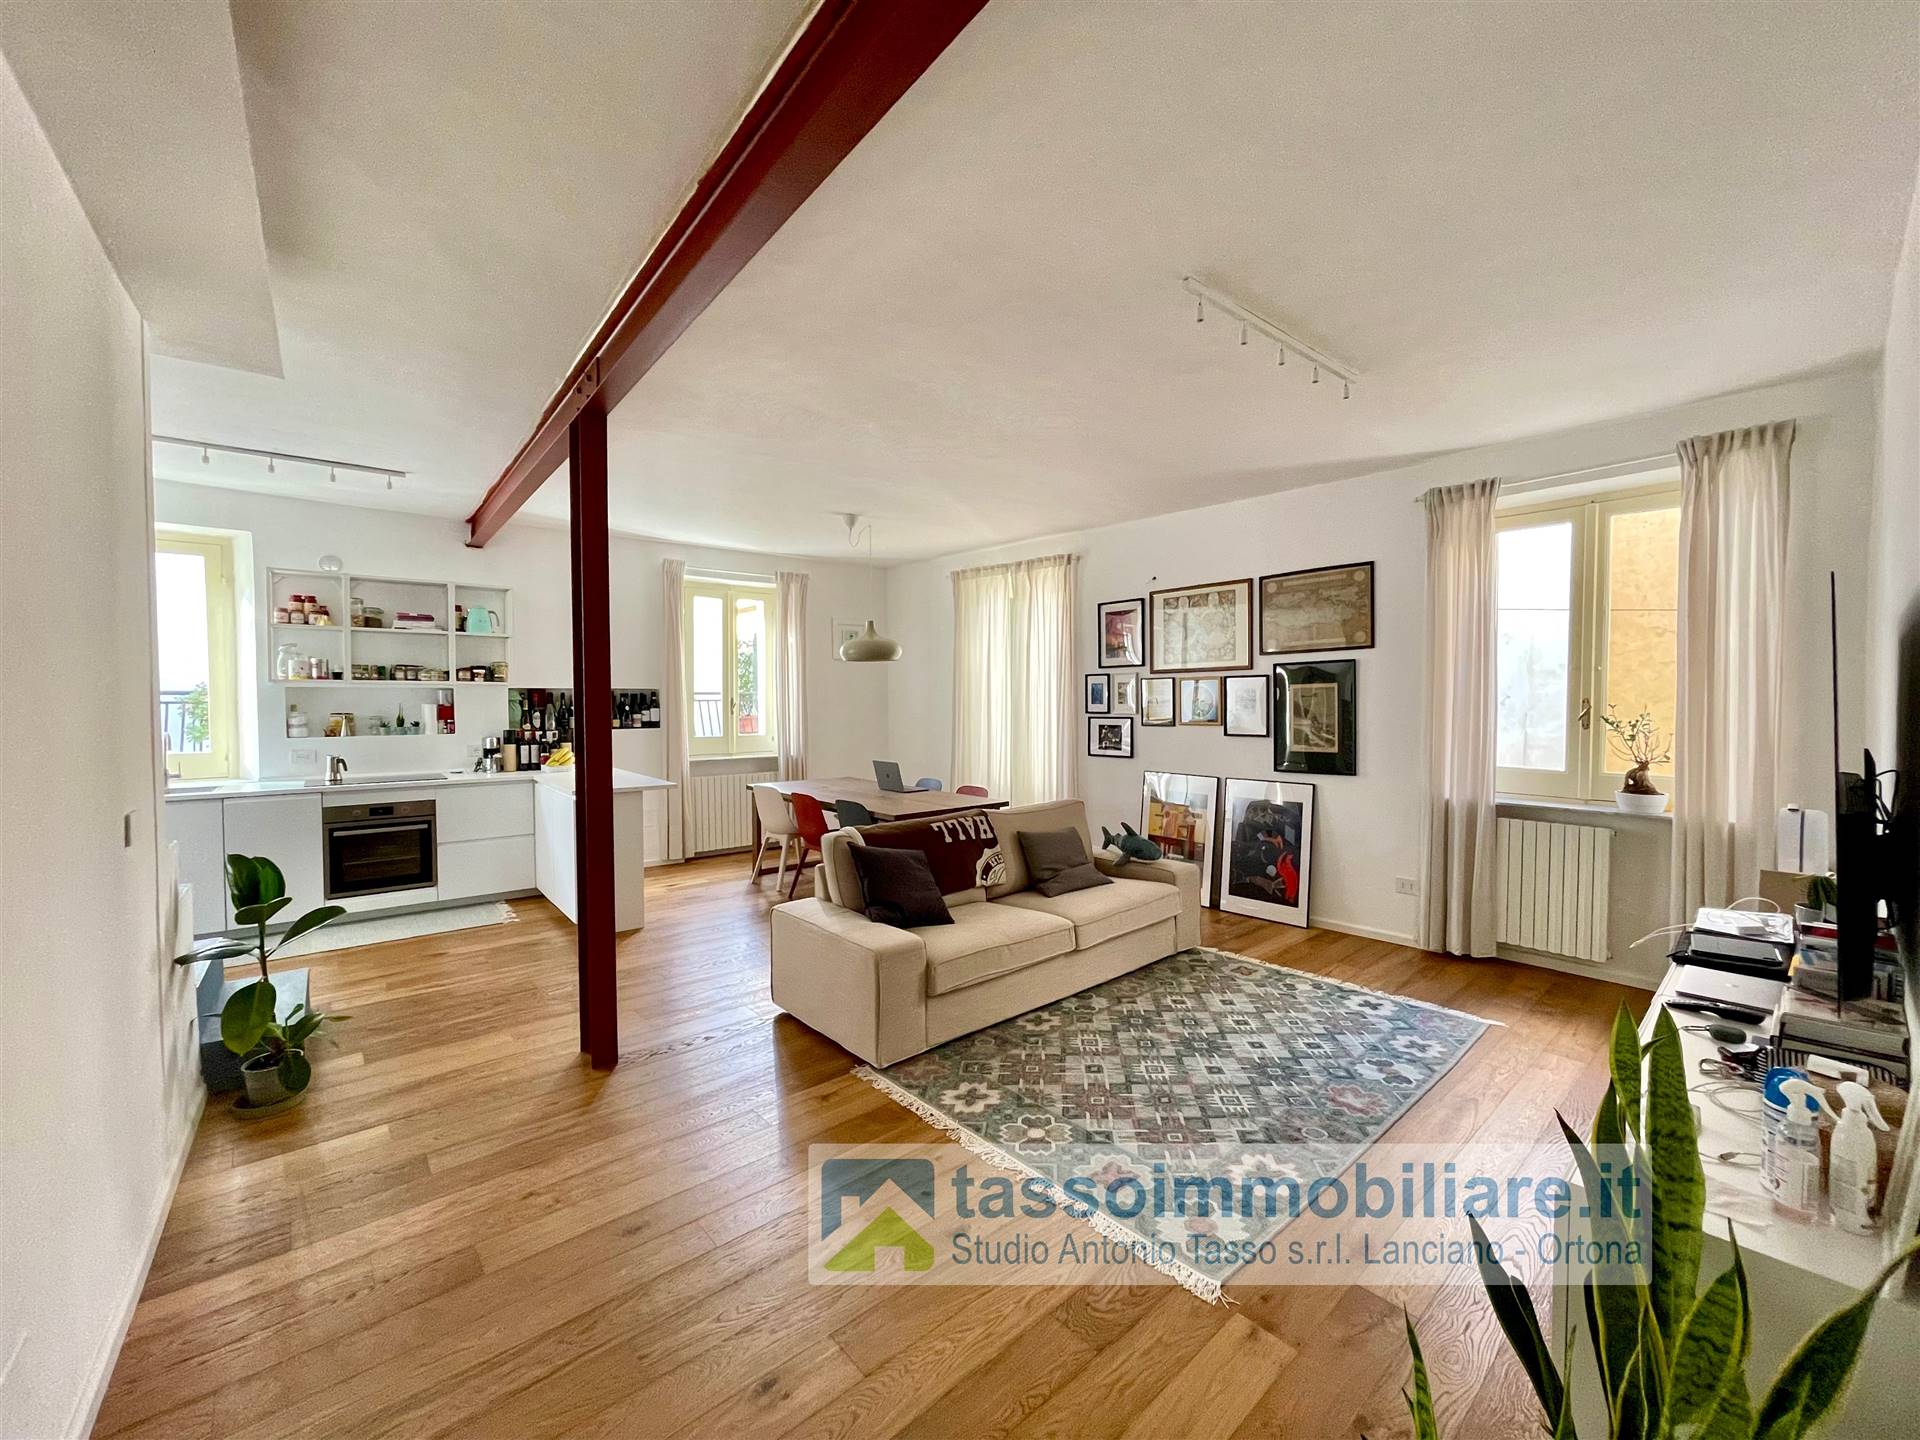 Appartamento in vendita a Ortona, 3 locali, prezzo € 190.000 | PortaleAgenzieImmobiliari.it